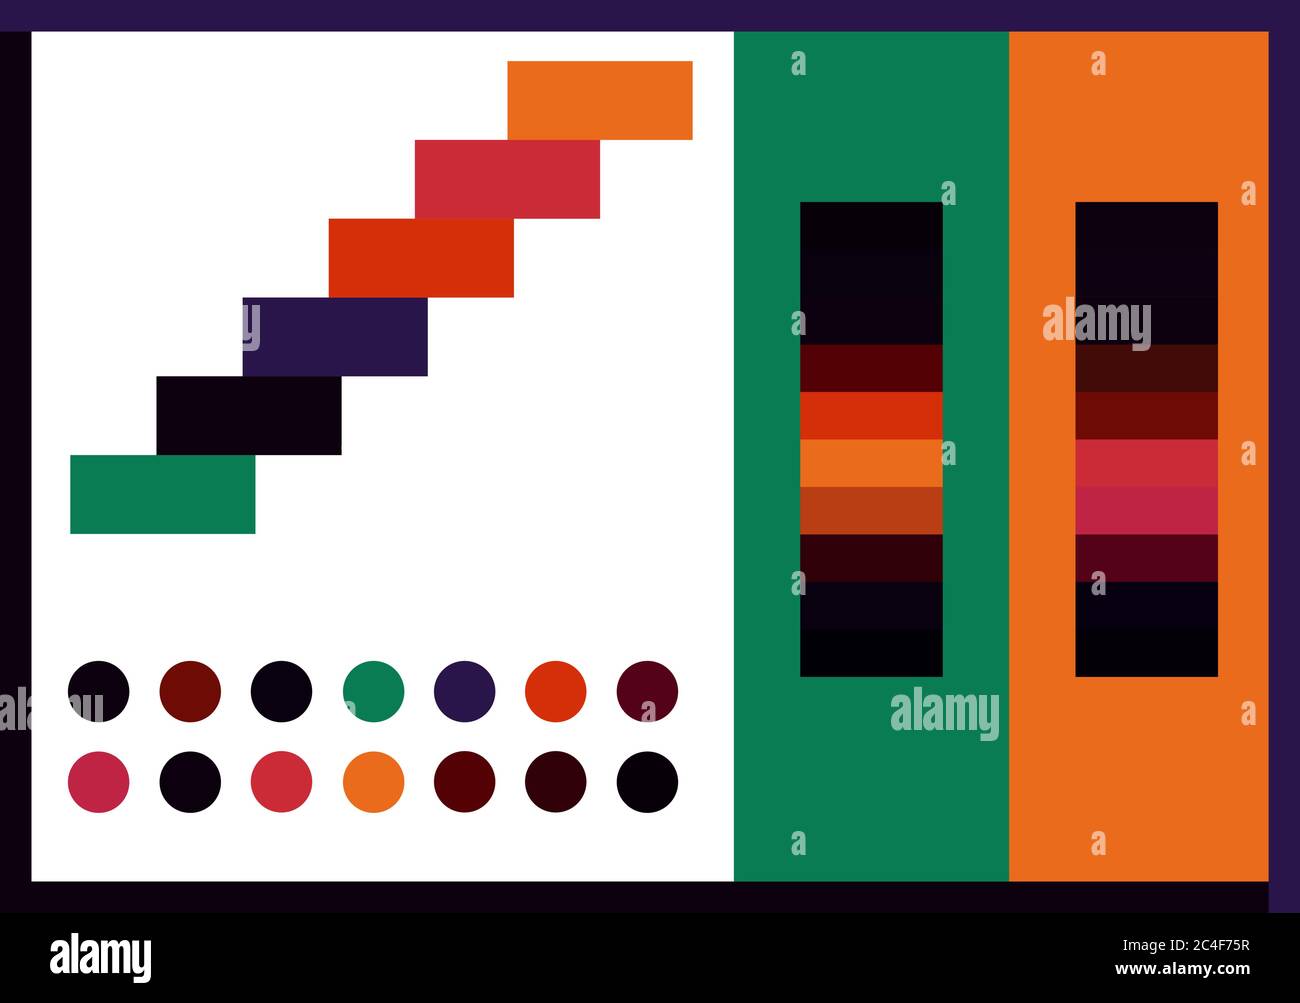 Kontrast bunte Farbpalette 2020 Vektor-Illustration Set. Dunkle, helle und trendige Farbmuster. Stock Vektor